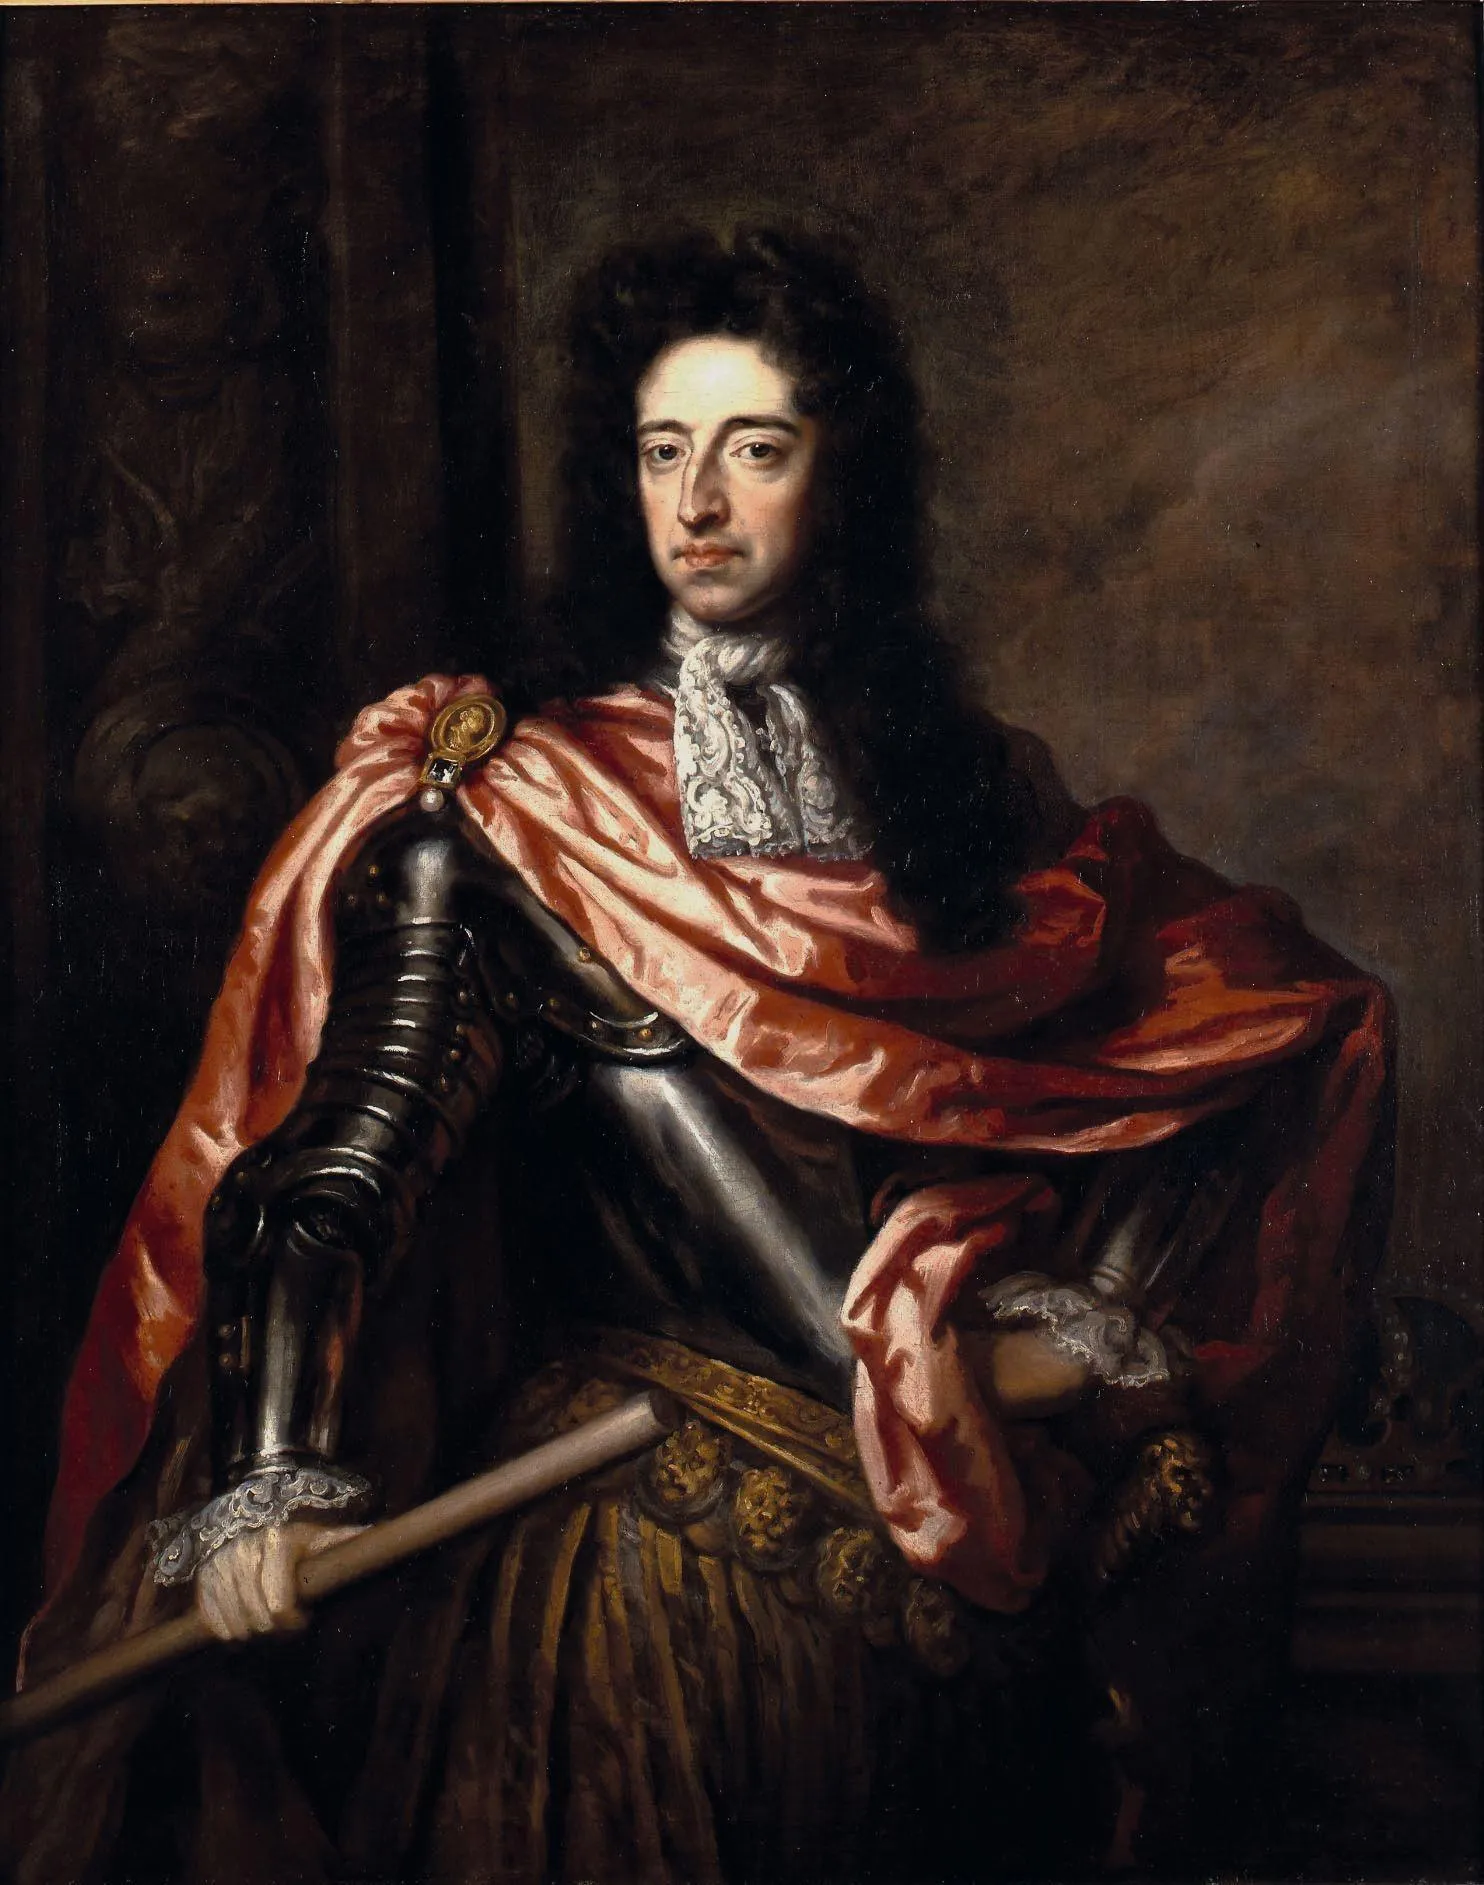 Godfrey Kneller, Portrait de Guillaume III, 1689, huile sur toile